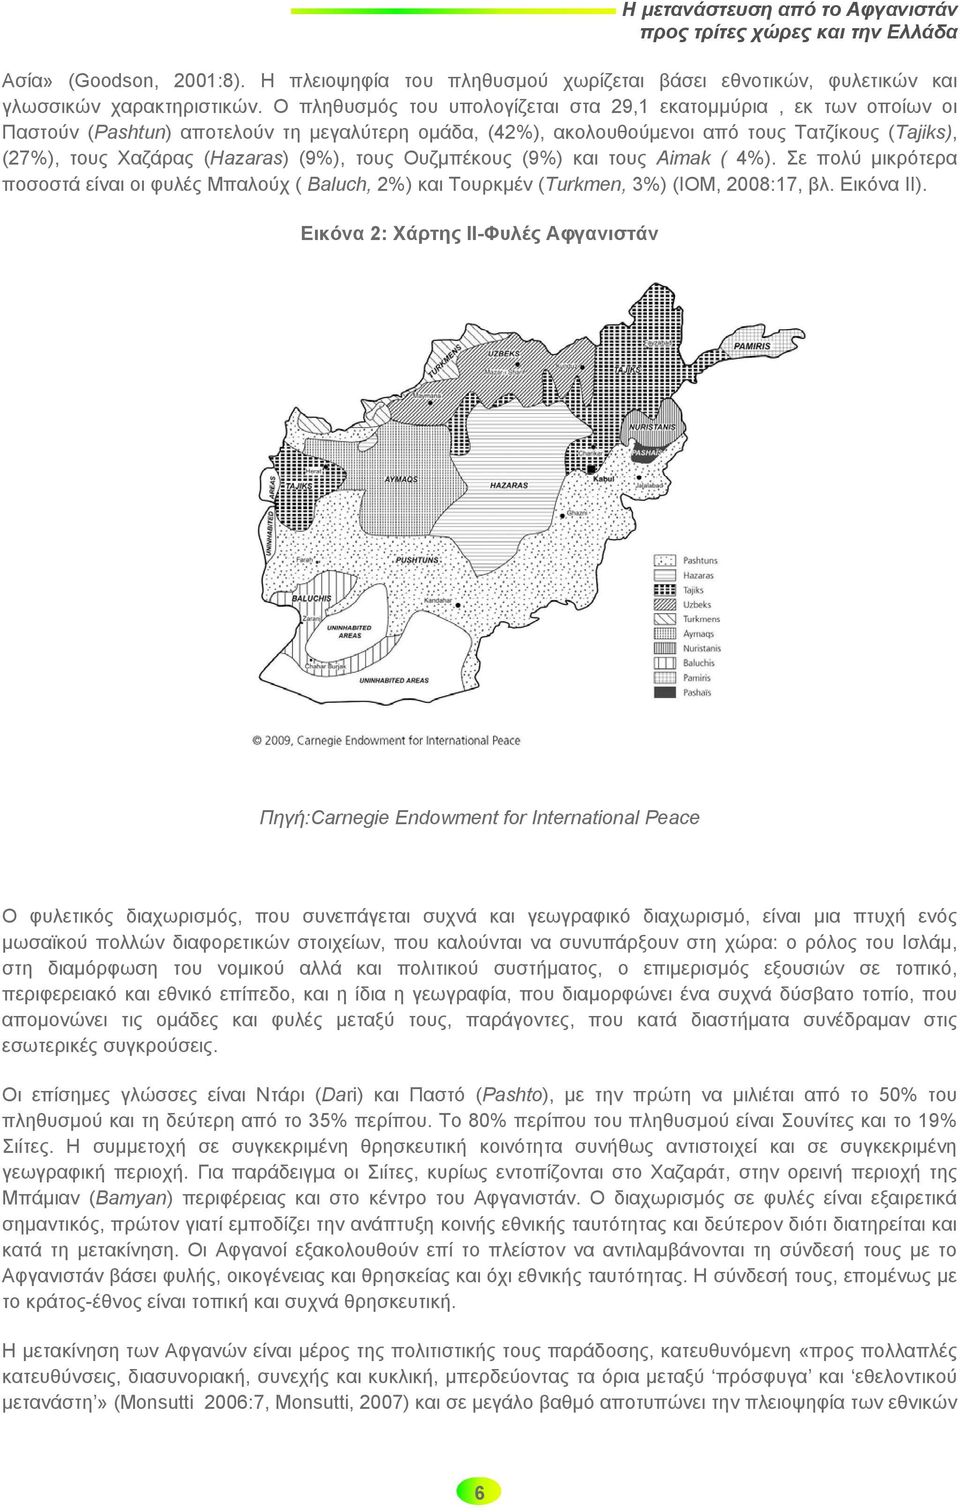 (9%), τους Ουζμπέκους (9%) και τους Aimak ( 4%). Σε πολύ μικρότερα ποσοστά είναι οι φυλές Μπαλούχ ( Baluch, 2%) και Τουρκμέν (Turkmen, 3%) (ΙΟΜ, 2008:17, βλ. Εικόνα ΙΙ).